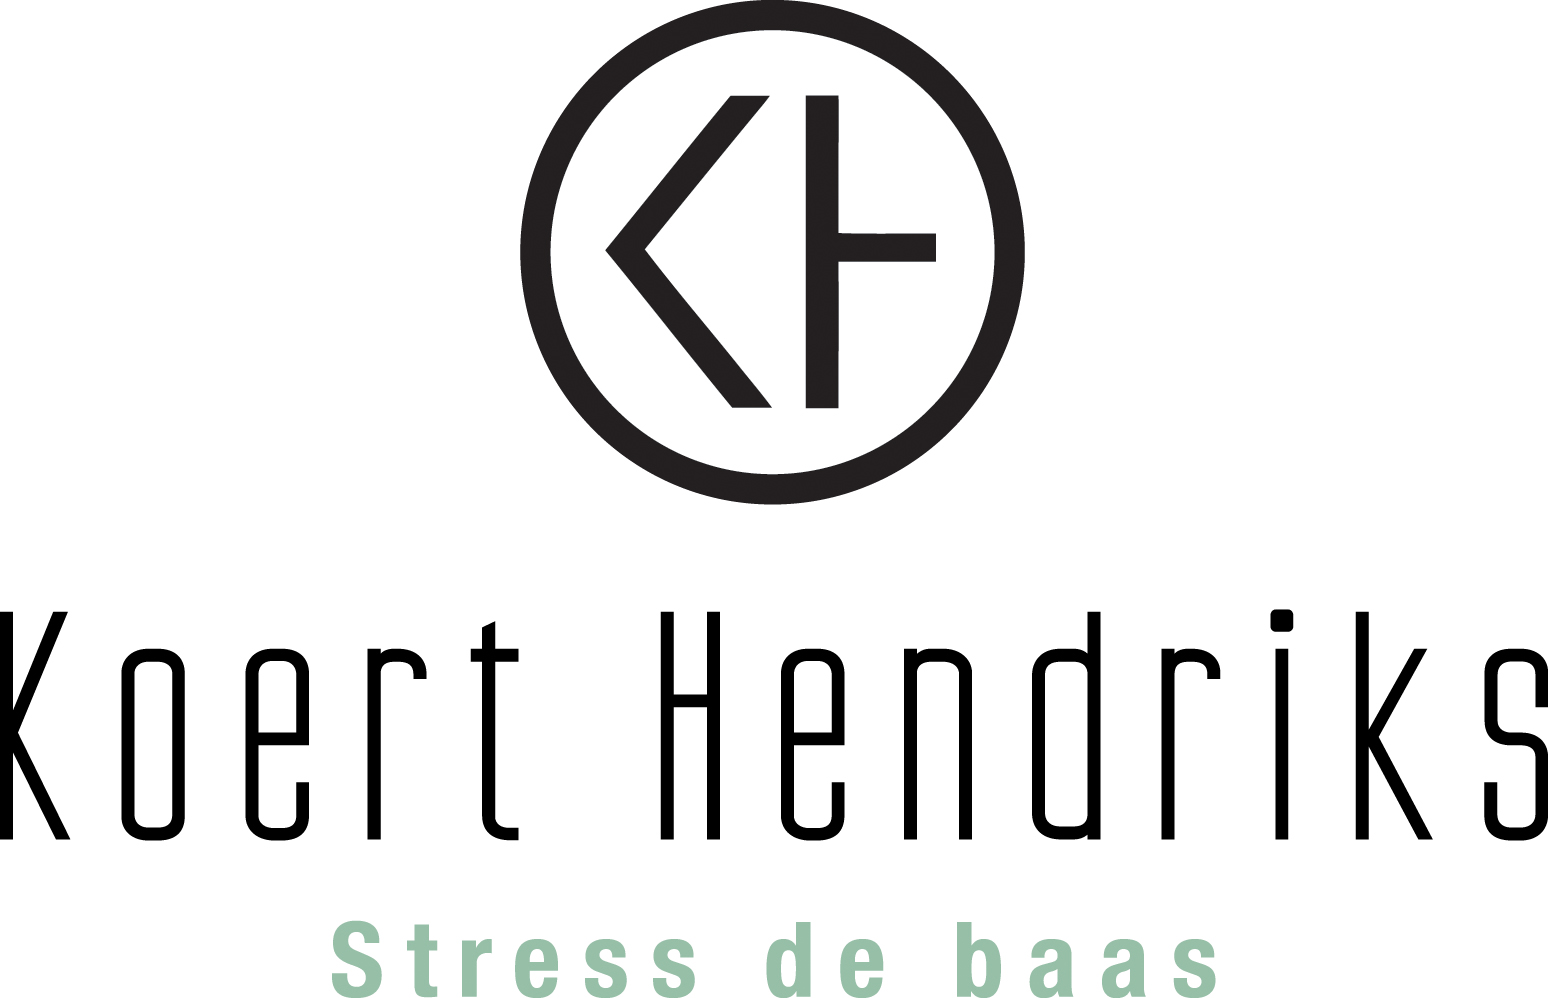 Koert Hendriks Stress de baas